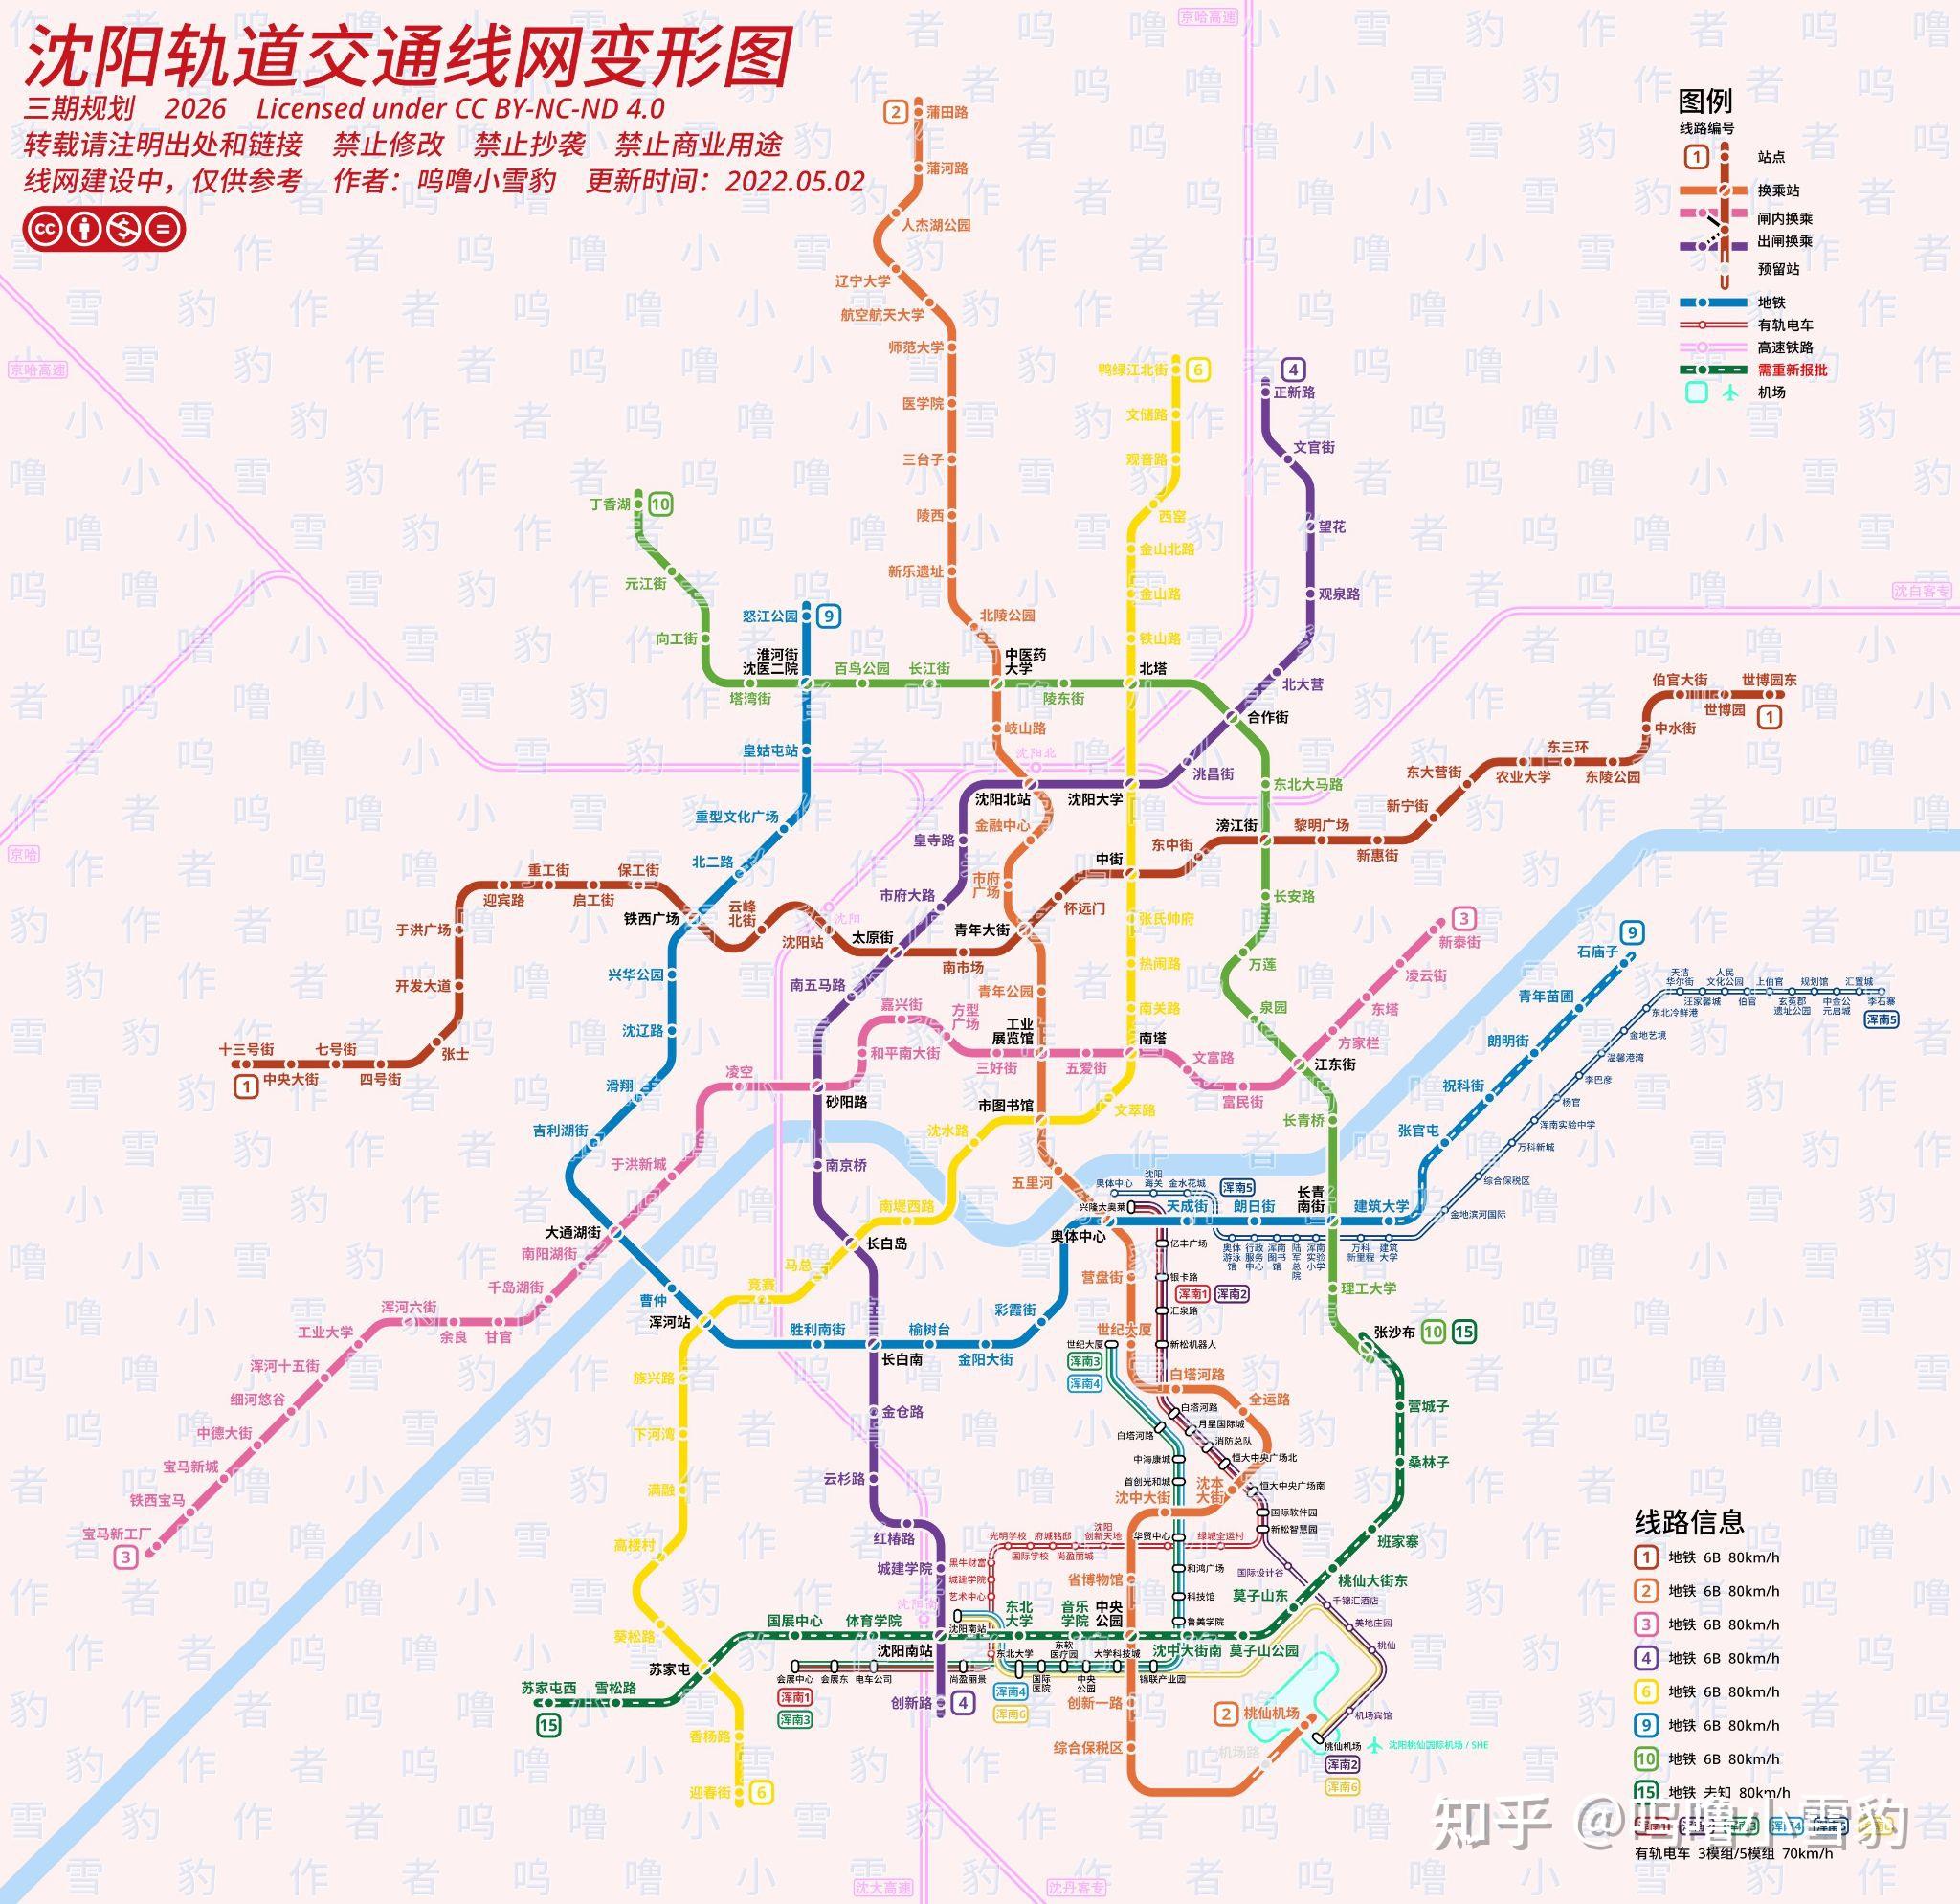 自制《沈阳轨道交通线网变形图(三期规划)》